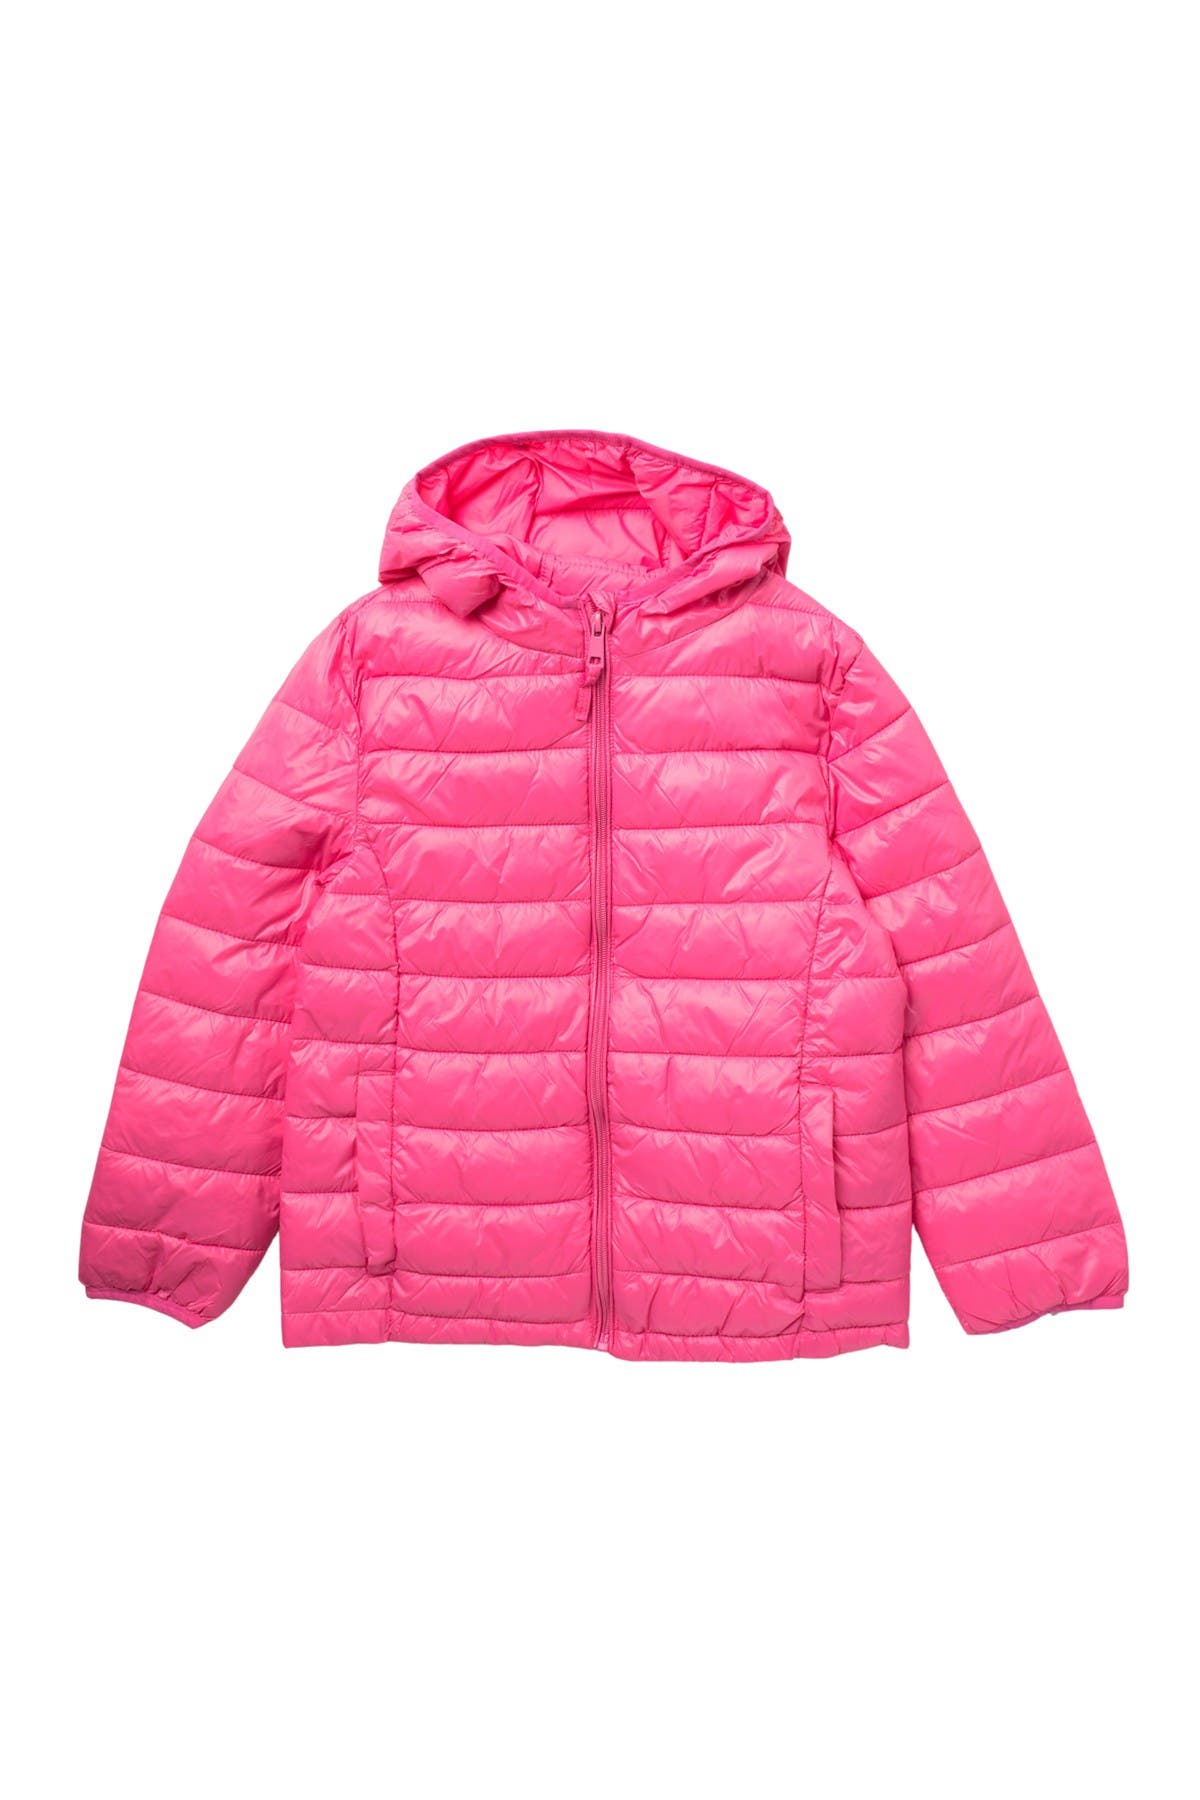 girls packable puffer jacket